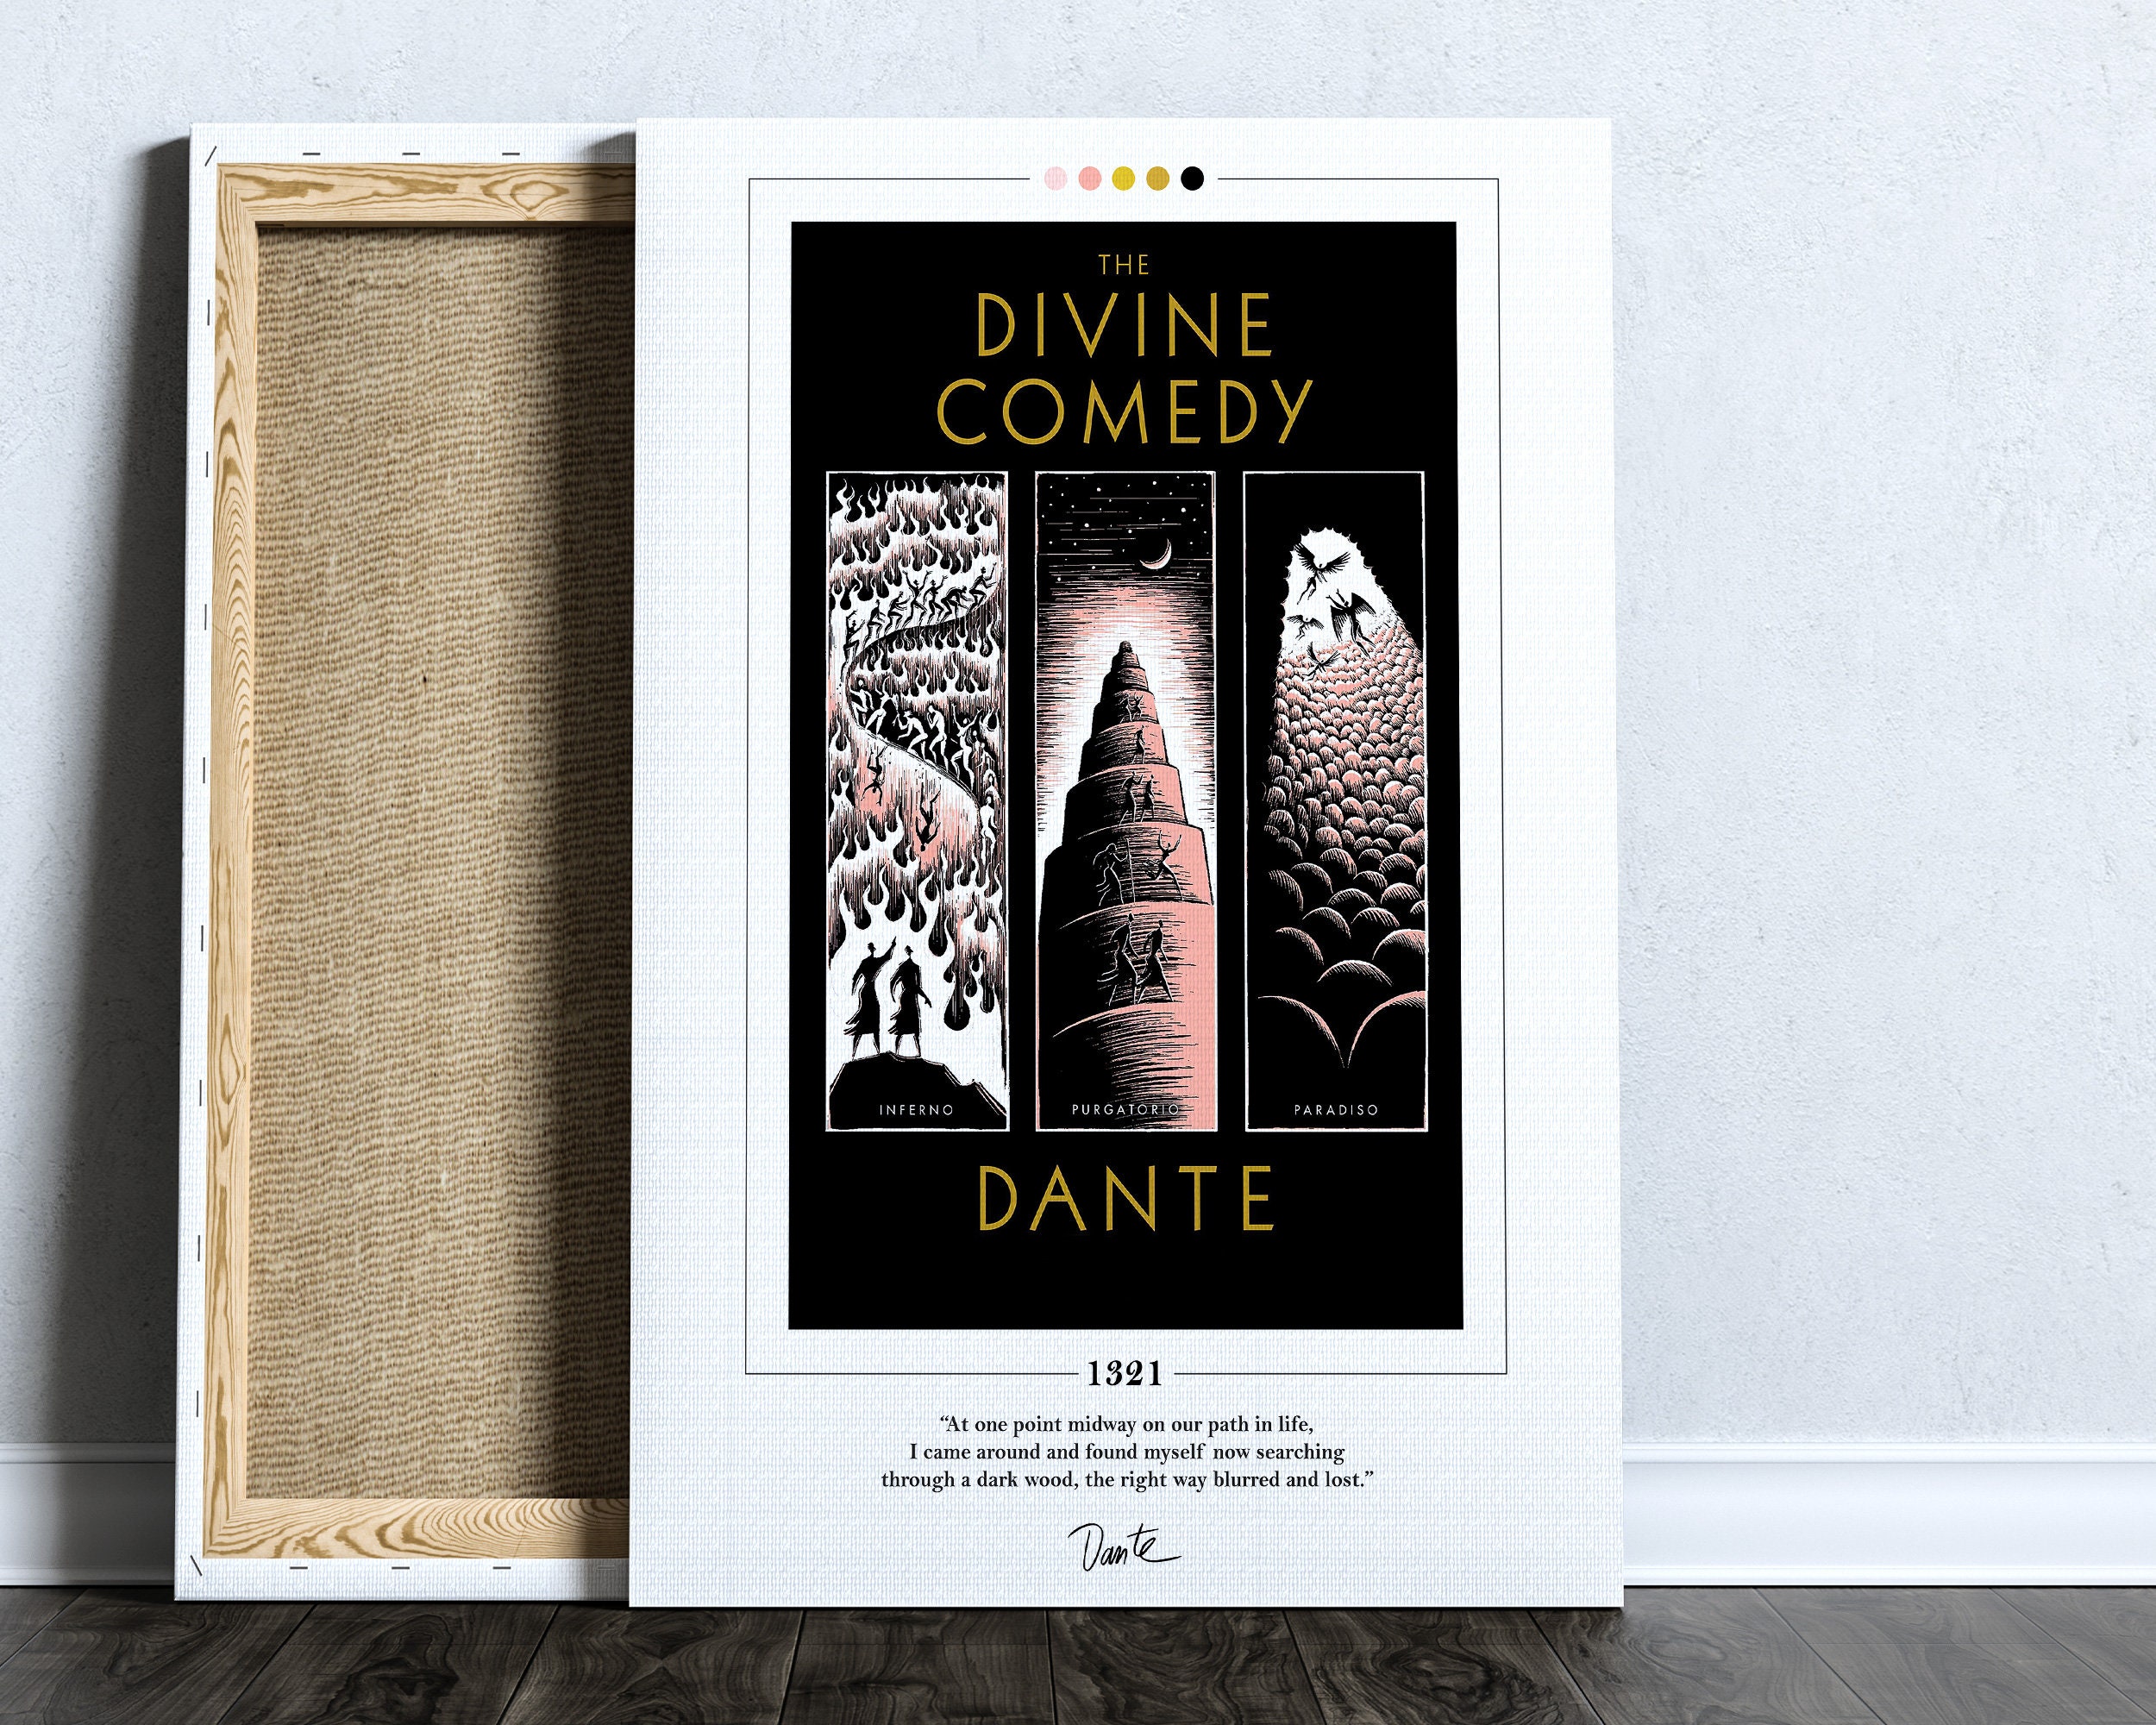 9 Círculos De Pintura Dantes Inferno Ilustração Stock - Ilustração de  humanidade, oprimir: 275755338